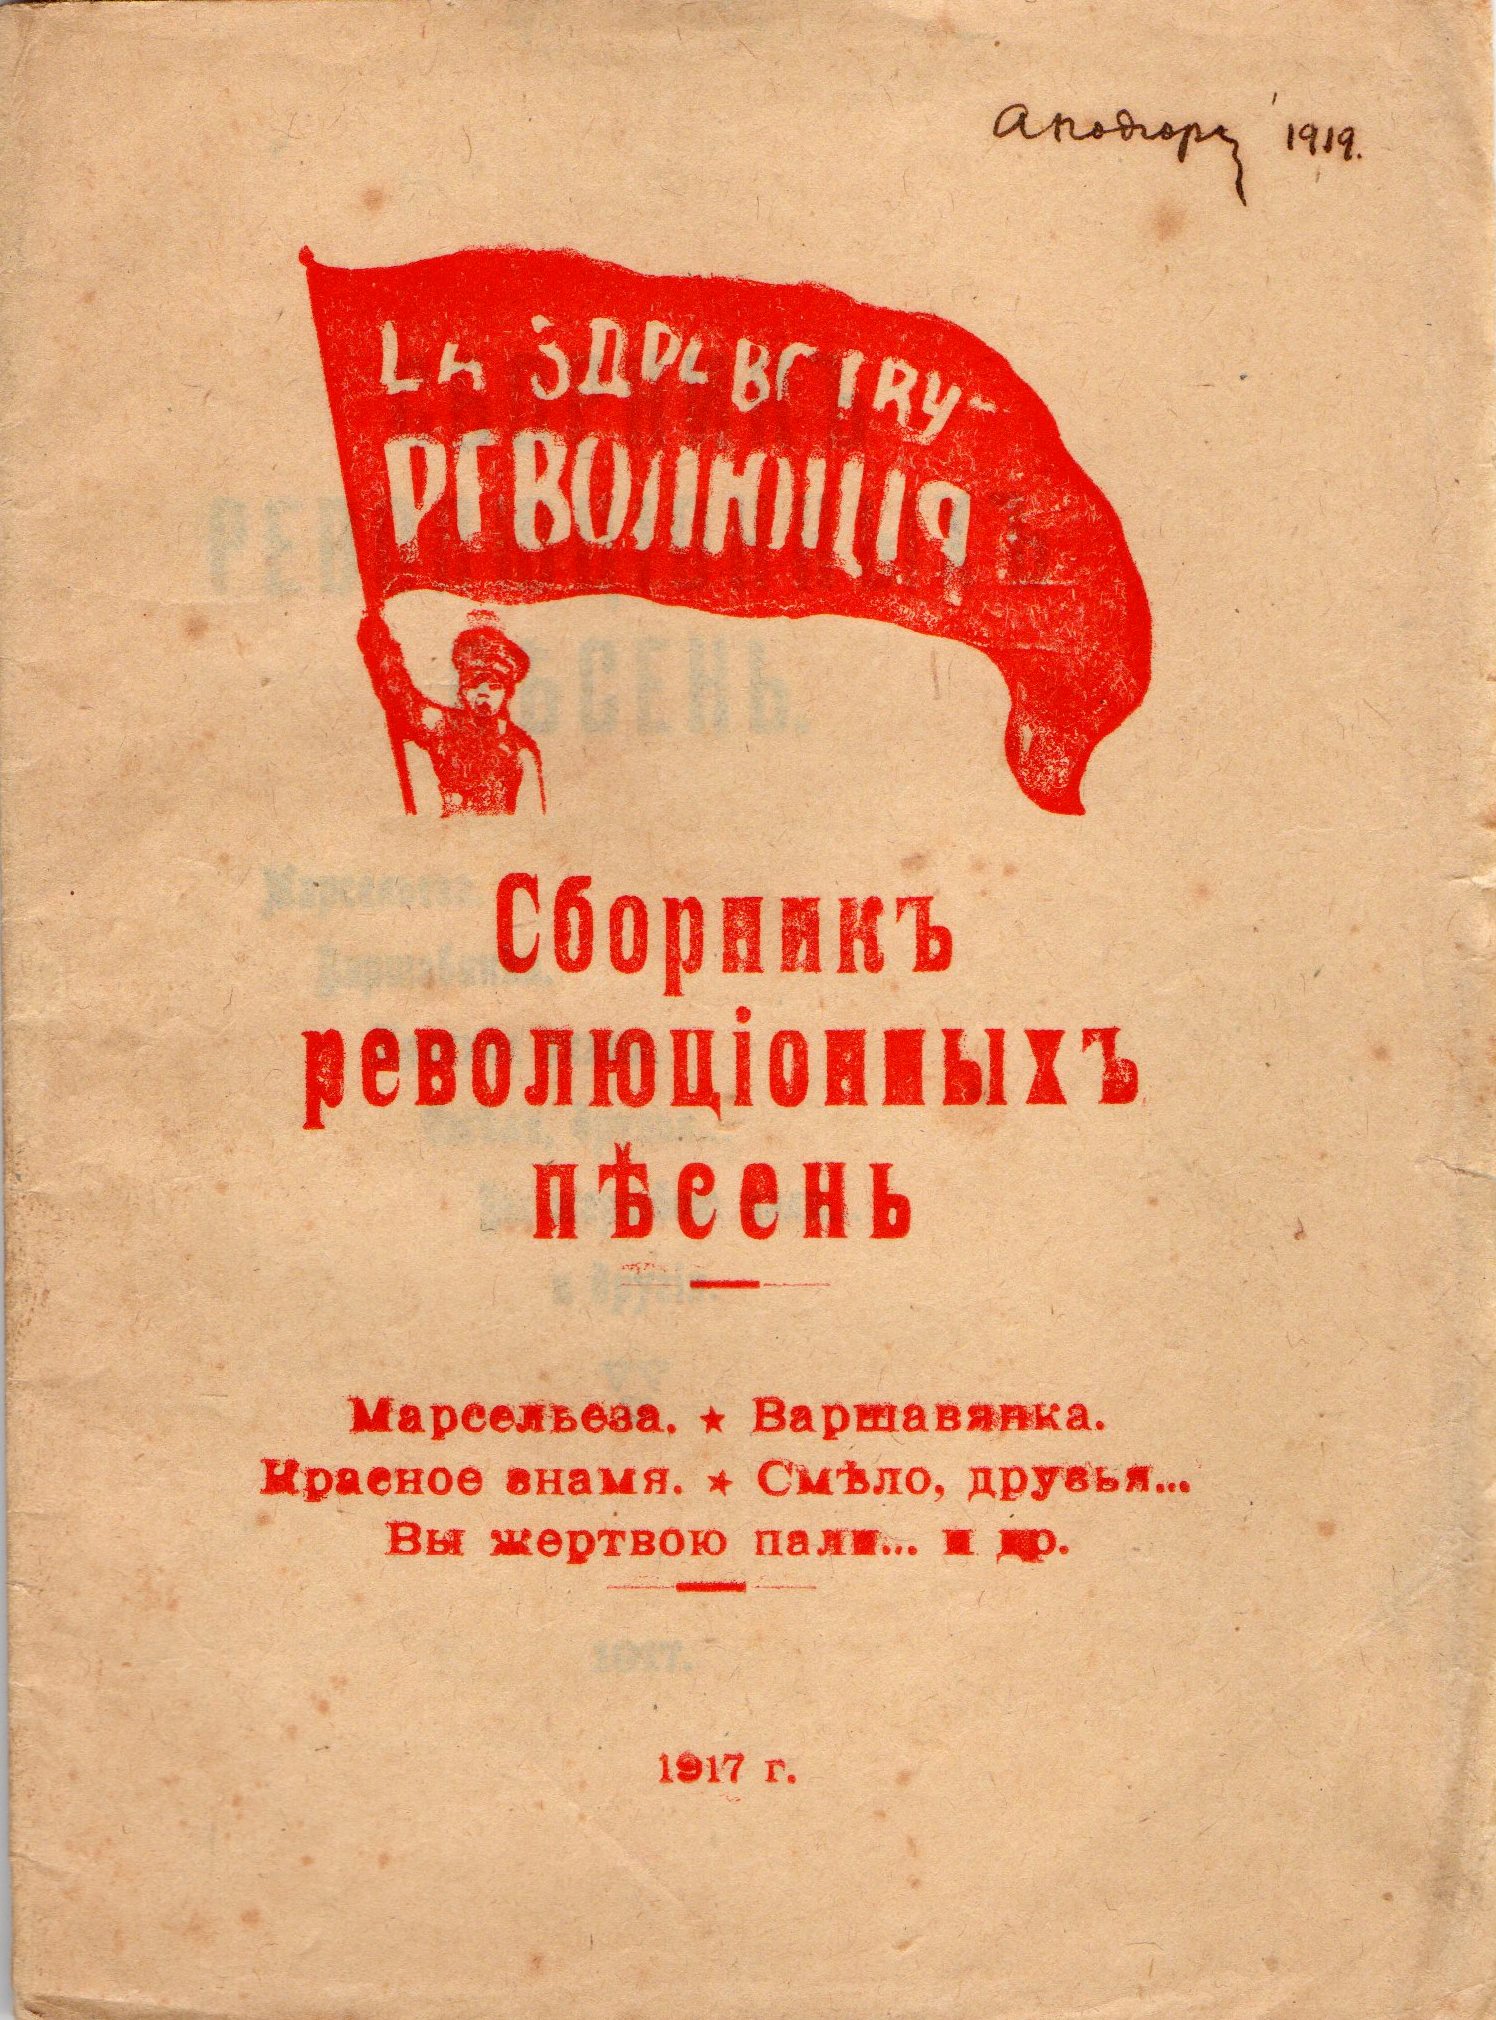 Брошура "Сборникъ революціонныхъ пѢсень"